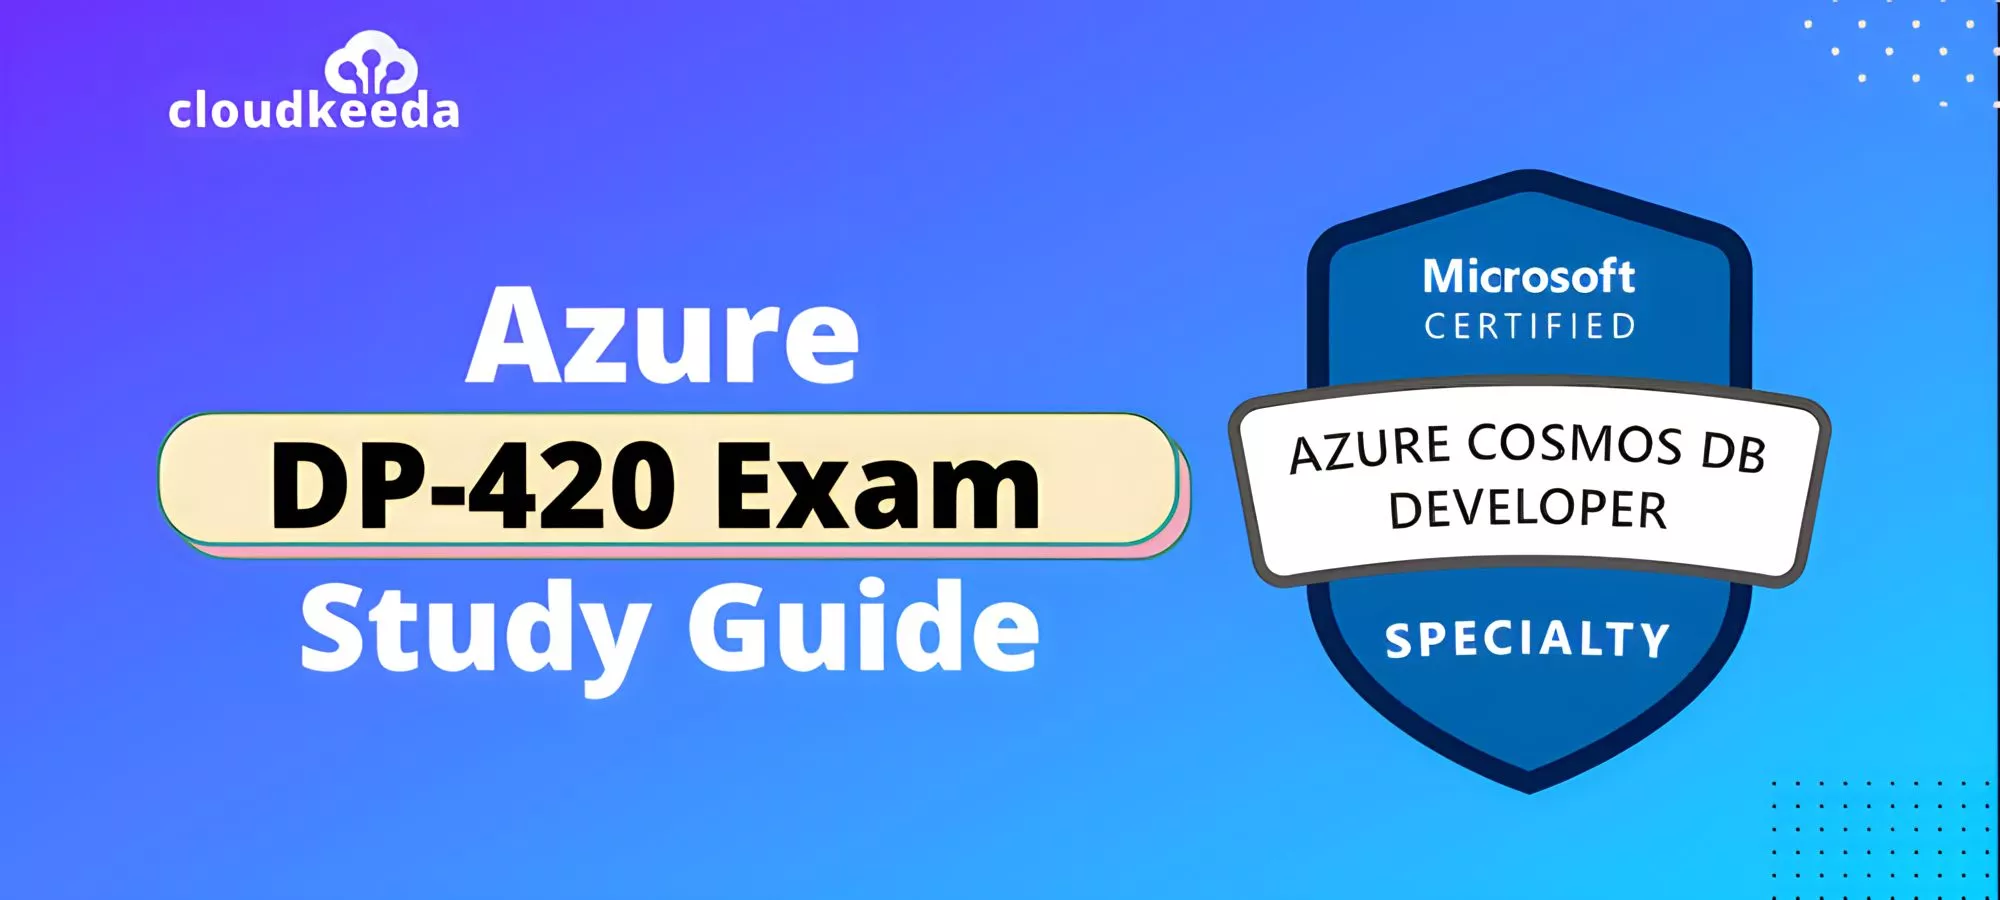 DP-420 Exam Overview